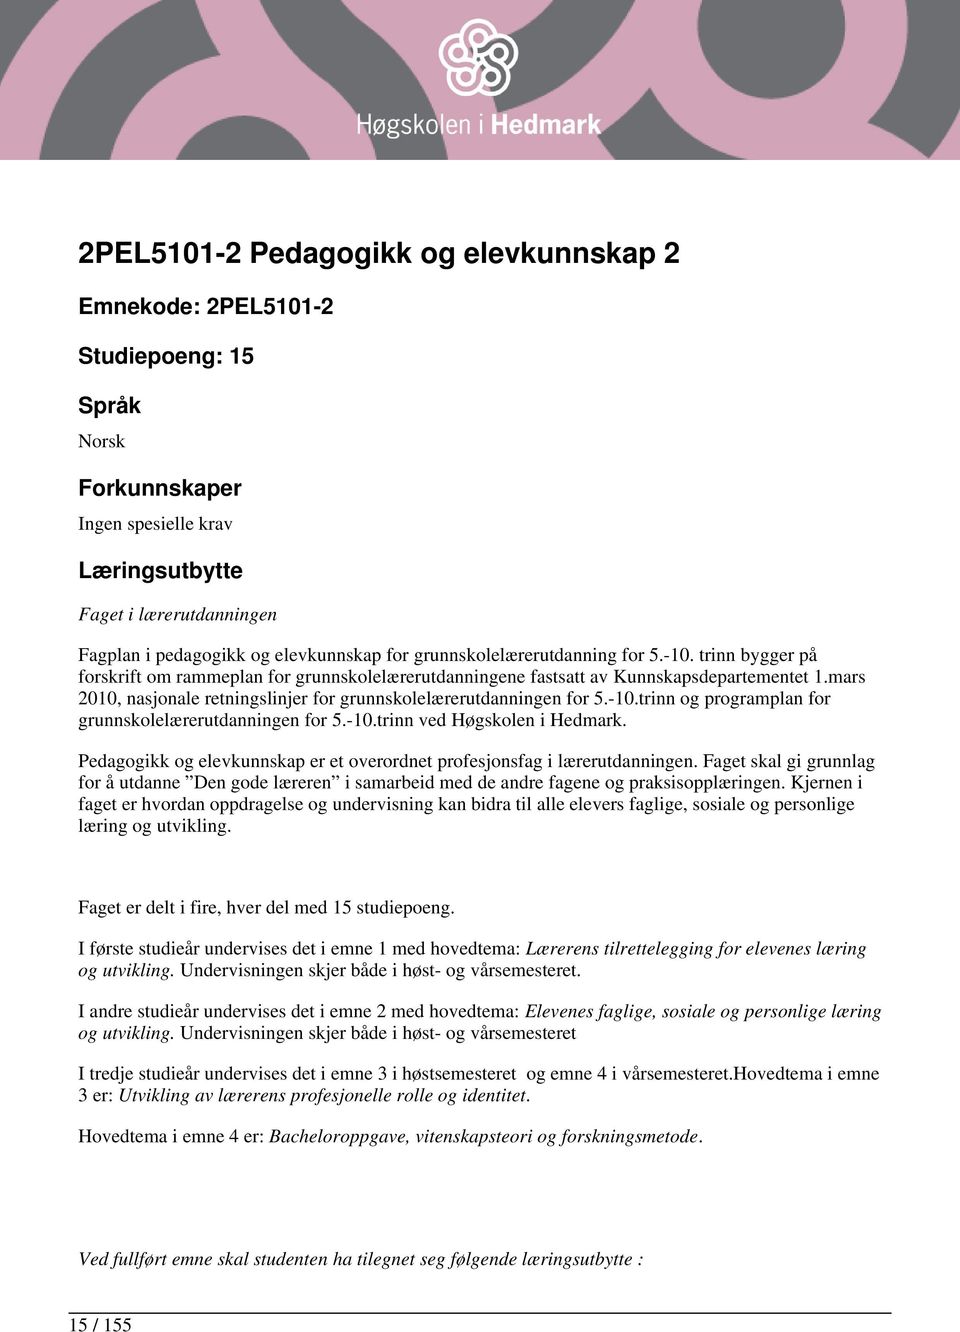 mars 2010, nasjonale retningslinjer for grunnskolelærerutdanningen for 5.-10.trinn og programplan for grunnskolelærerutdanningen for 5.-10.trinn ved Høgskolen i Hedmark.